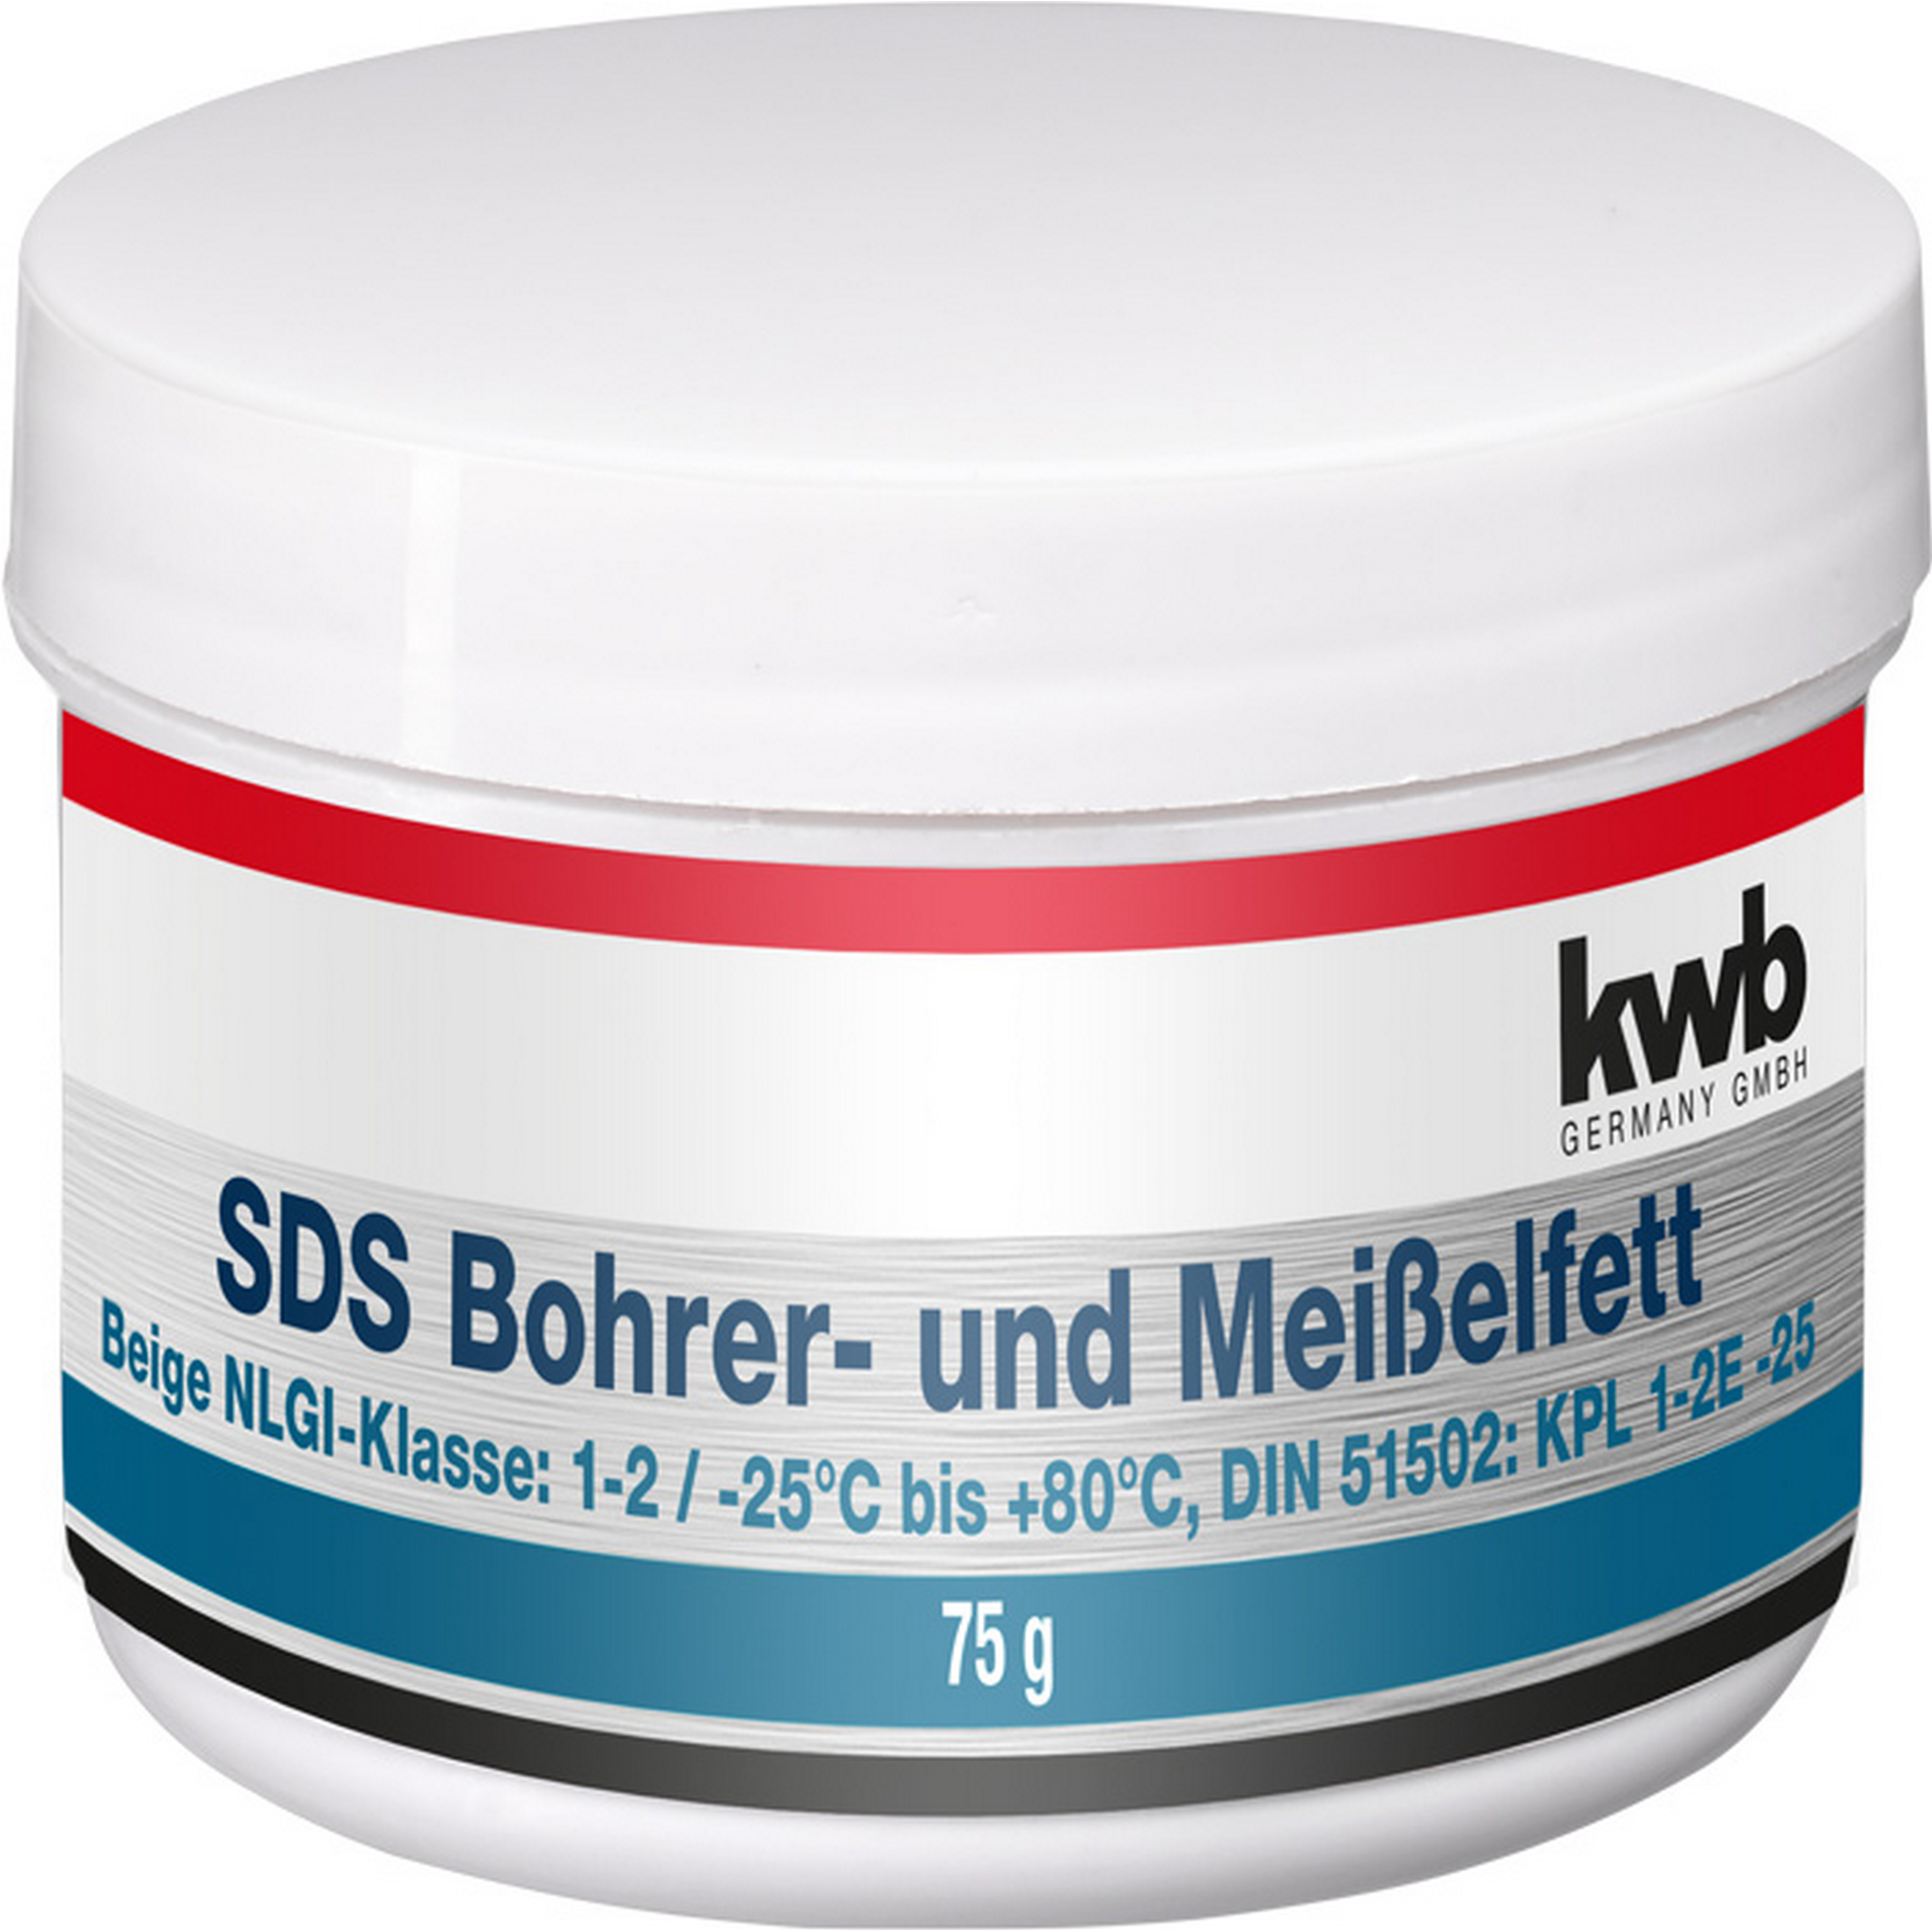 SDS Bohrer- und Meißelfett 75 g + product picture